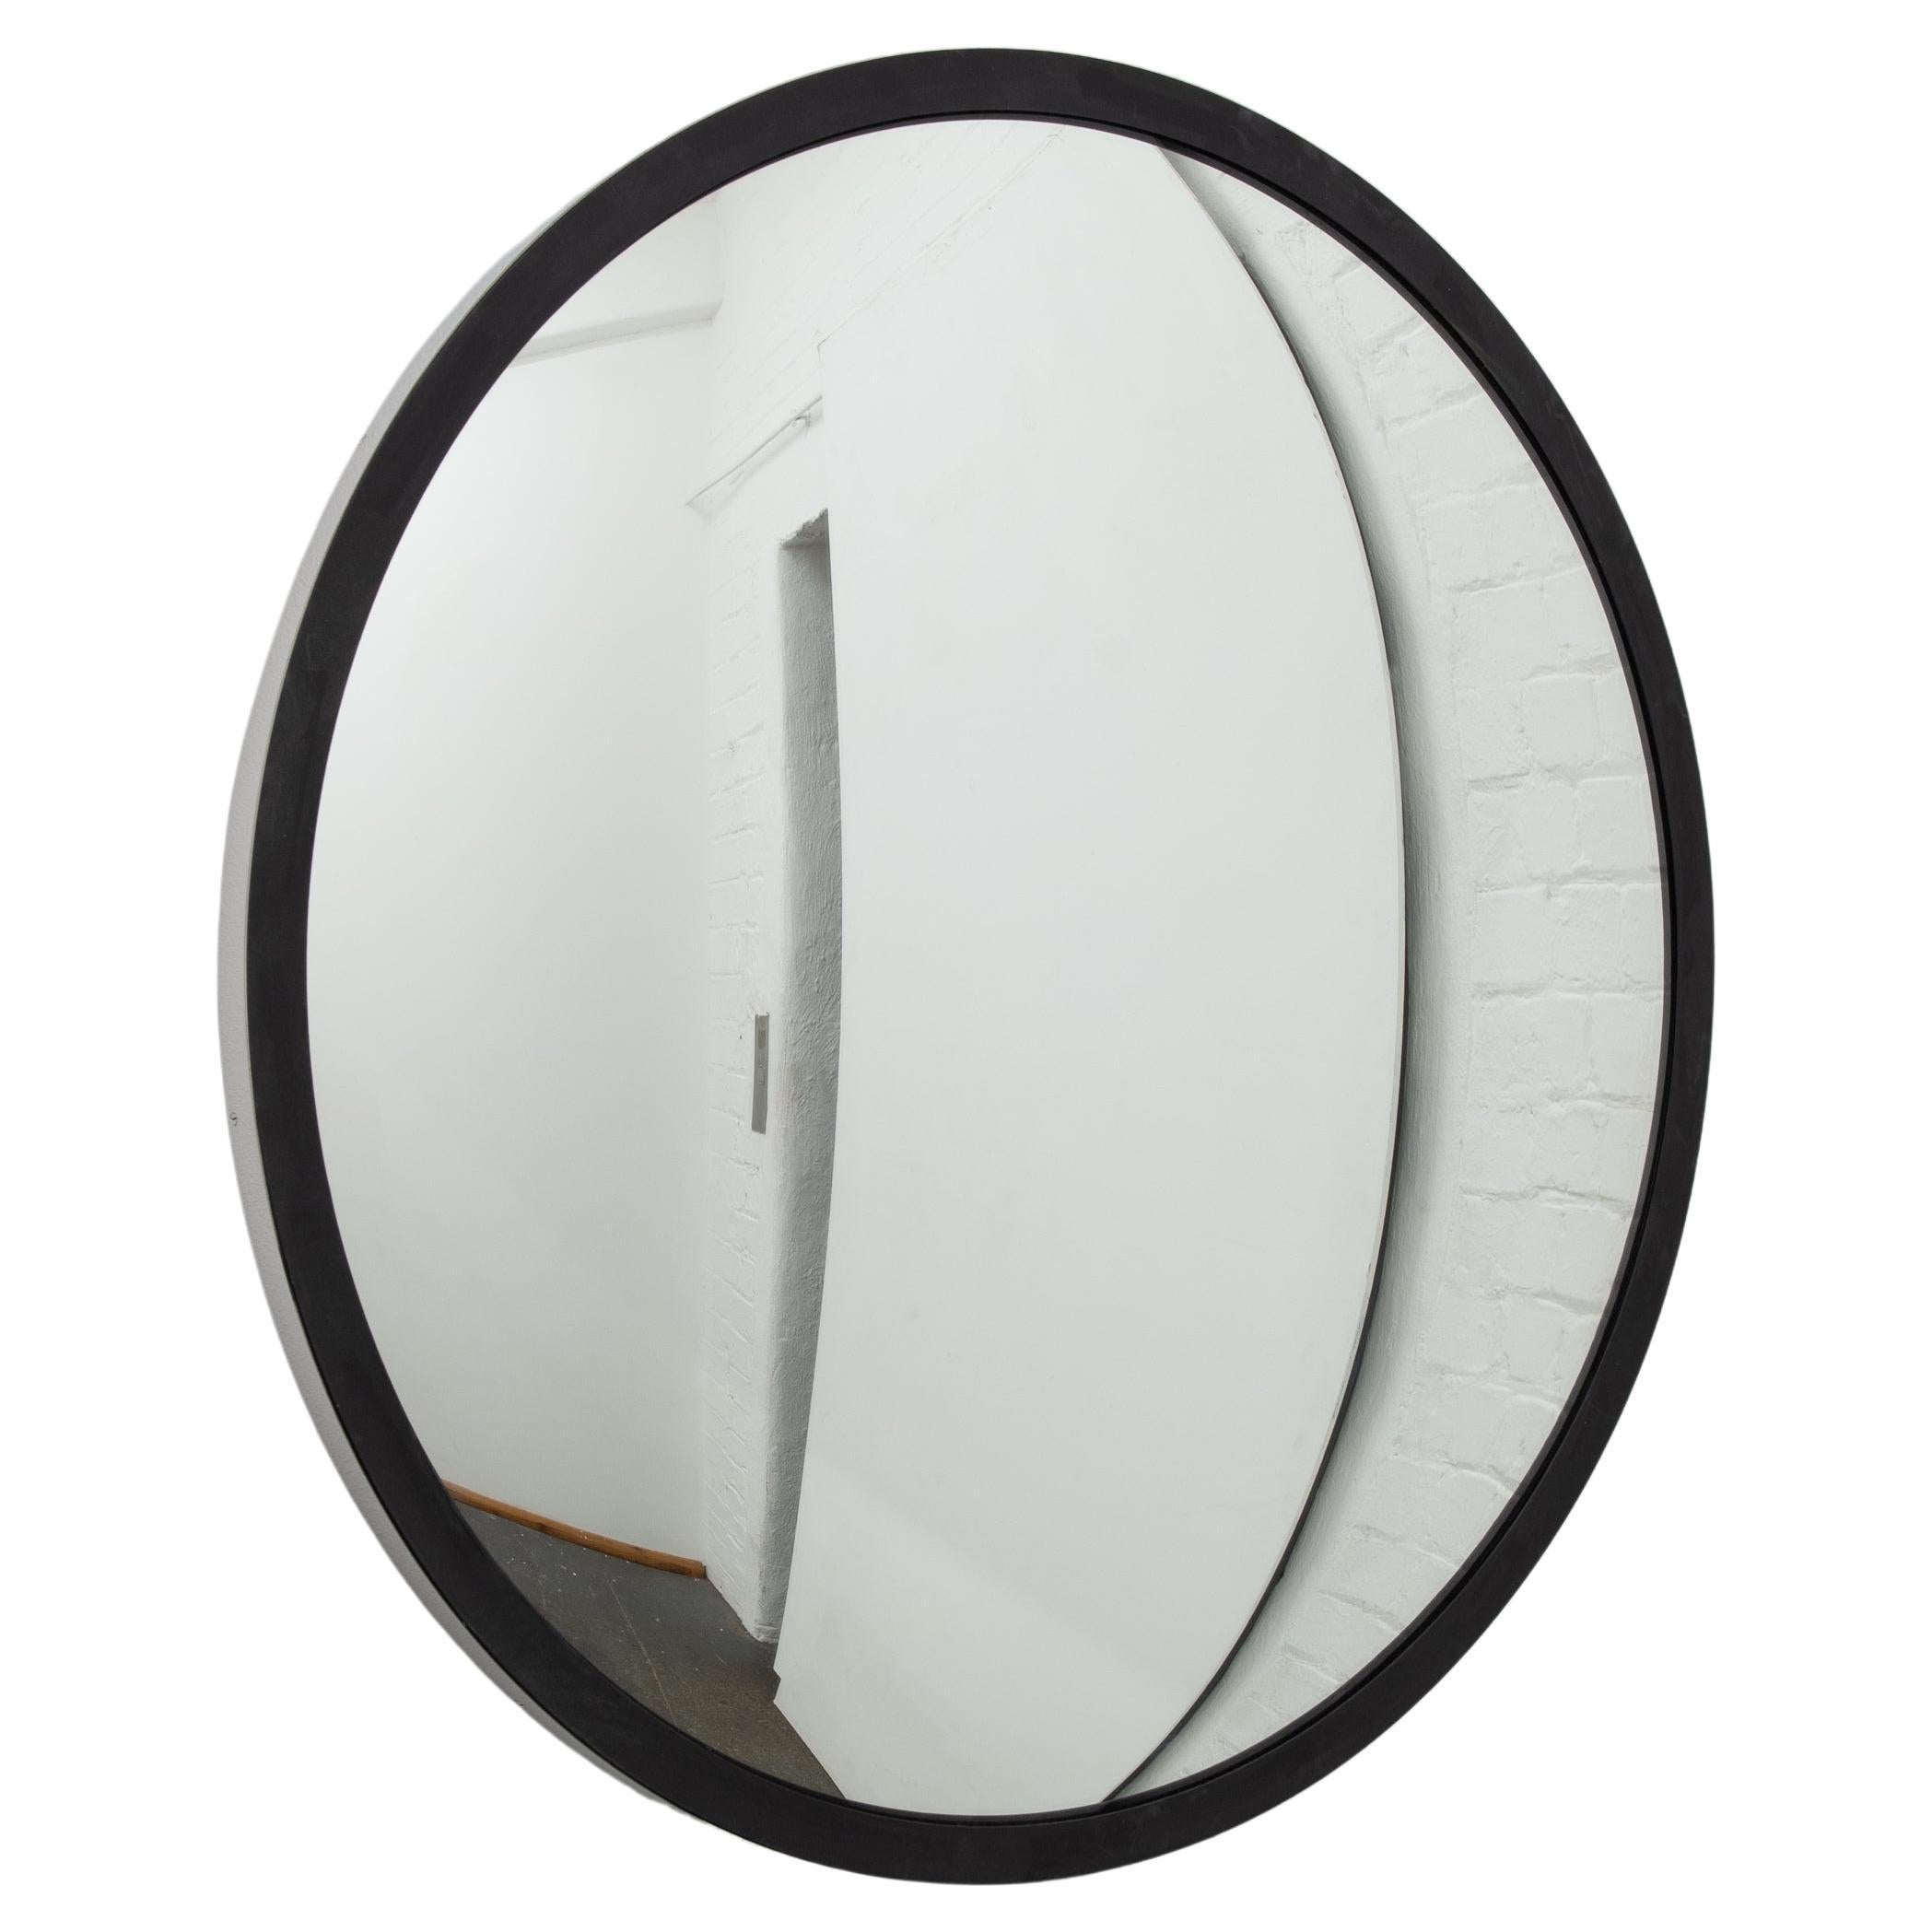 Orbis Handcrafted Round Convex Mirror, Edelstahl und schwarzer Rahmen, groß